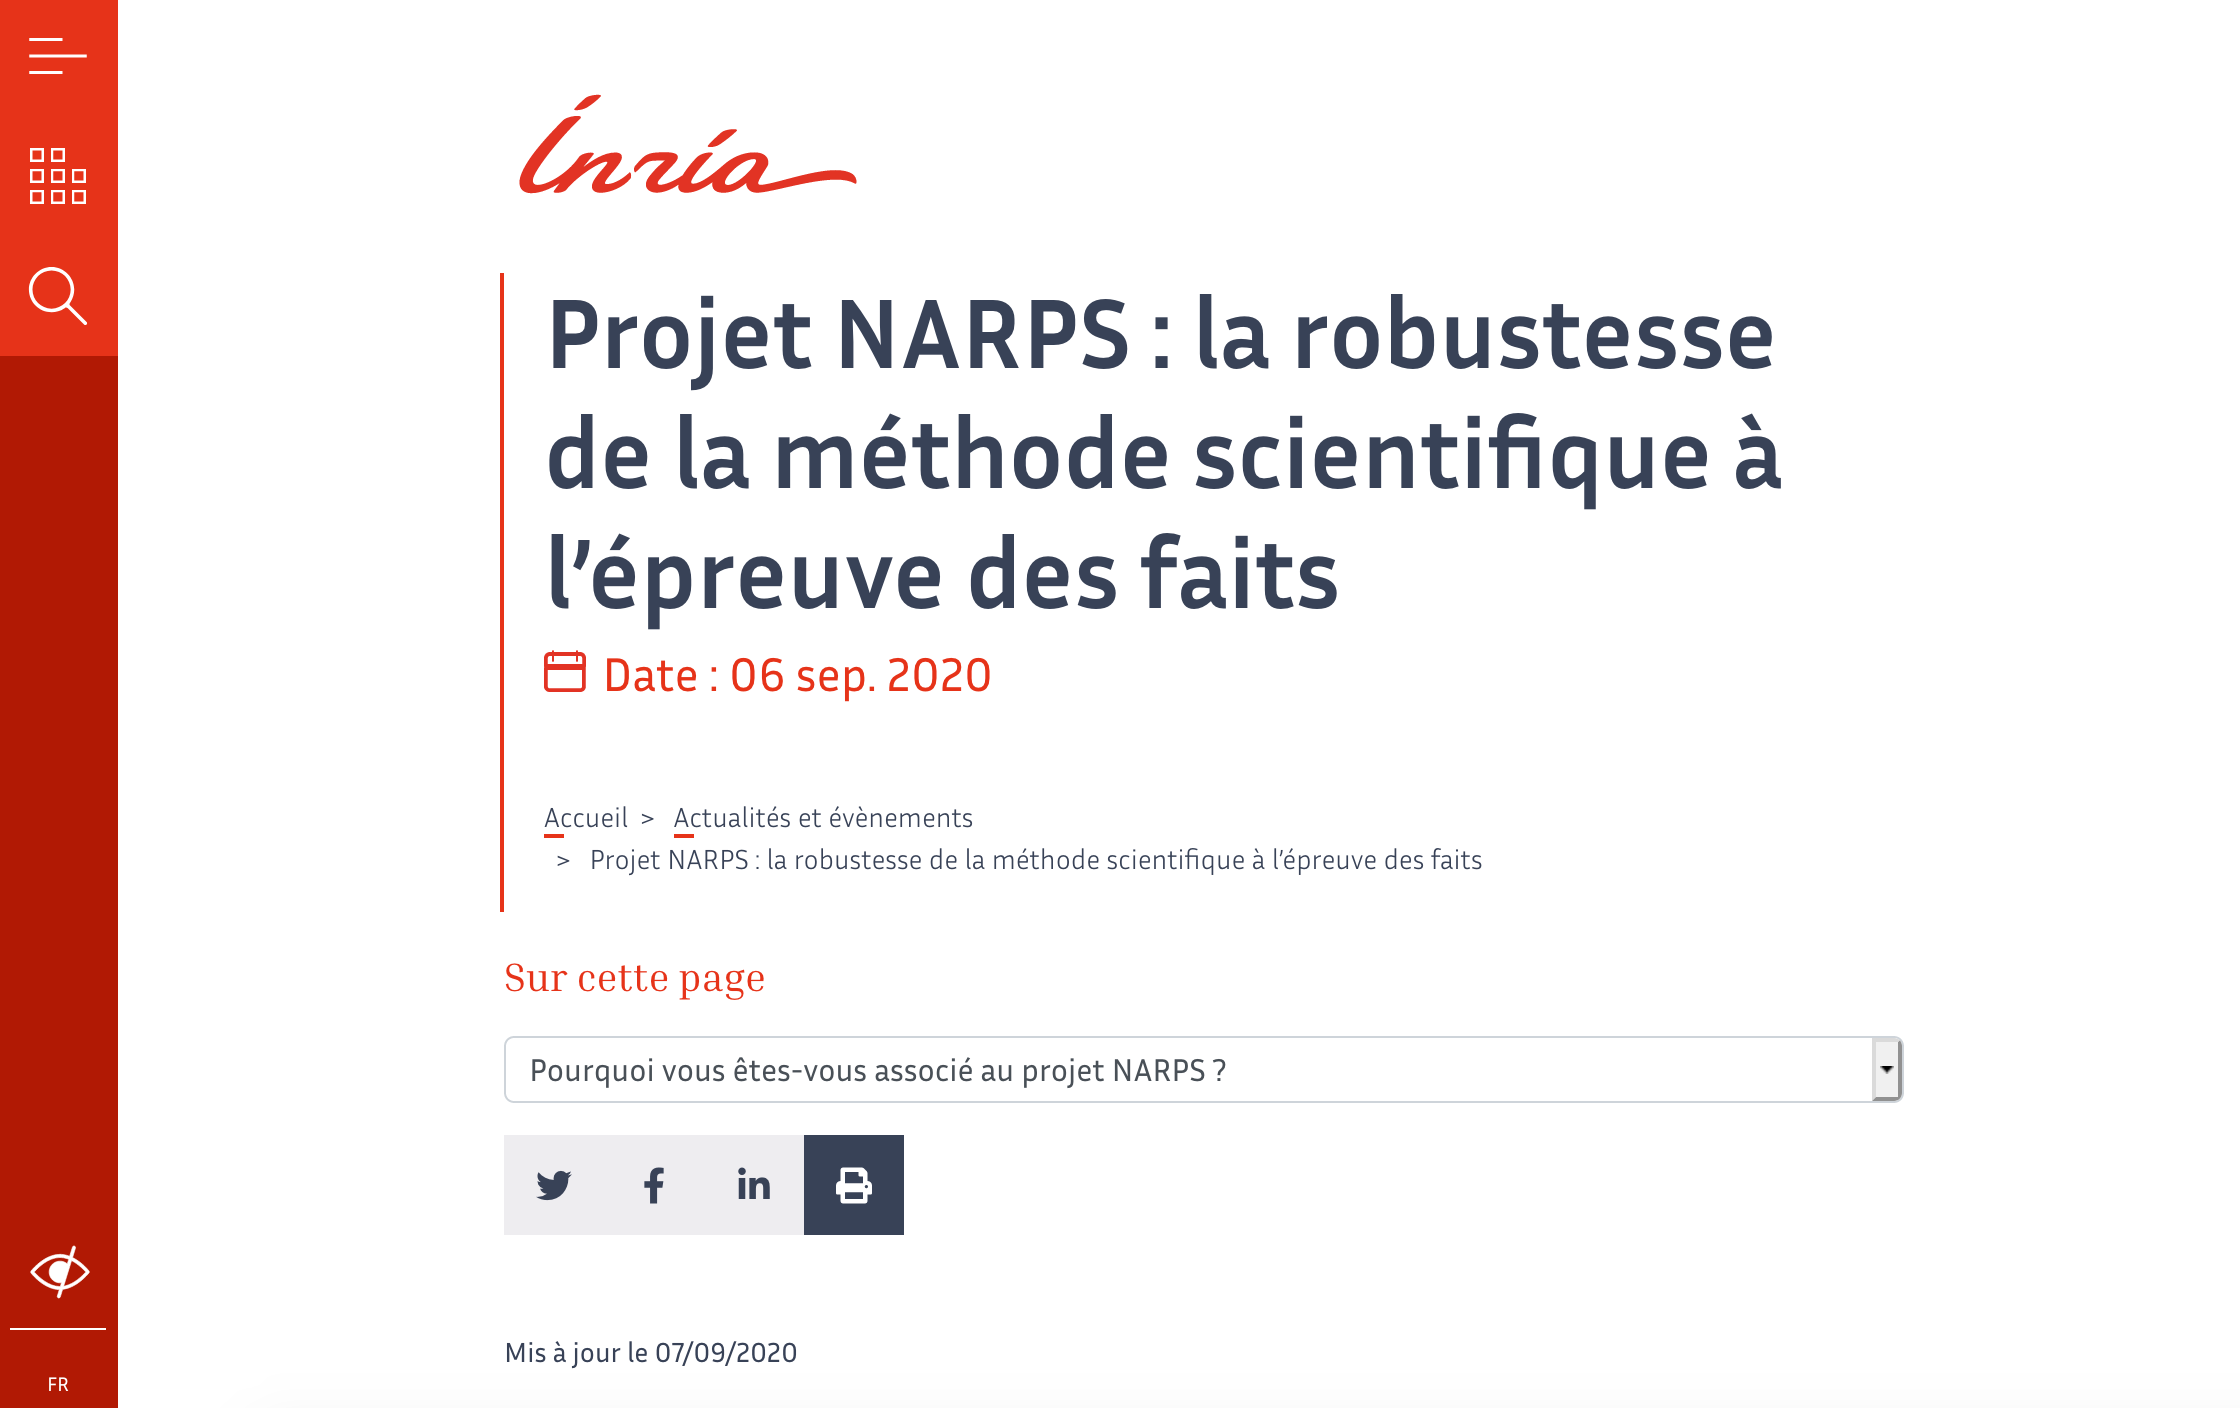 NARPS Inria website